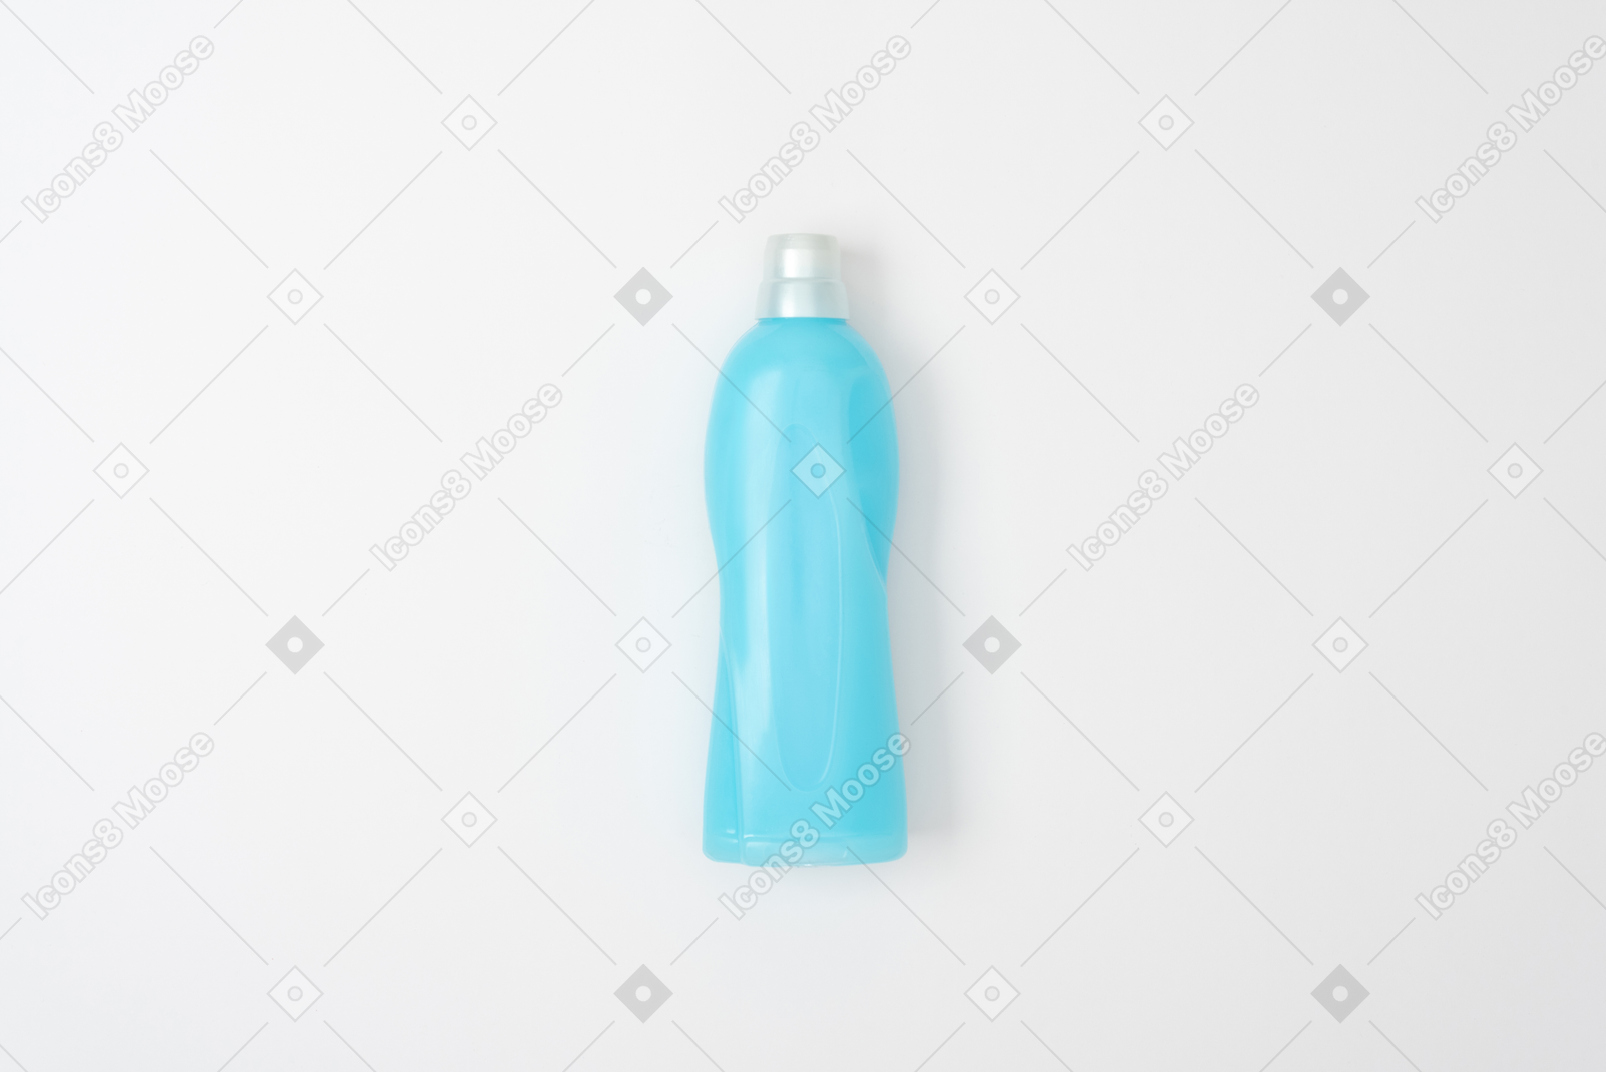 Applica le tue idee di design su una bottiglia domestica